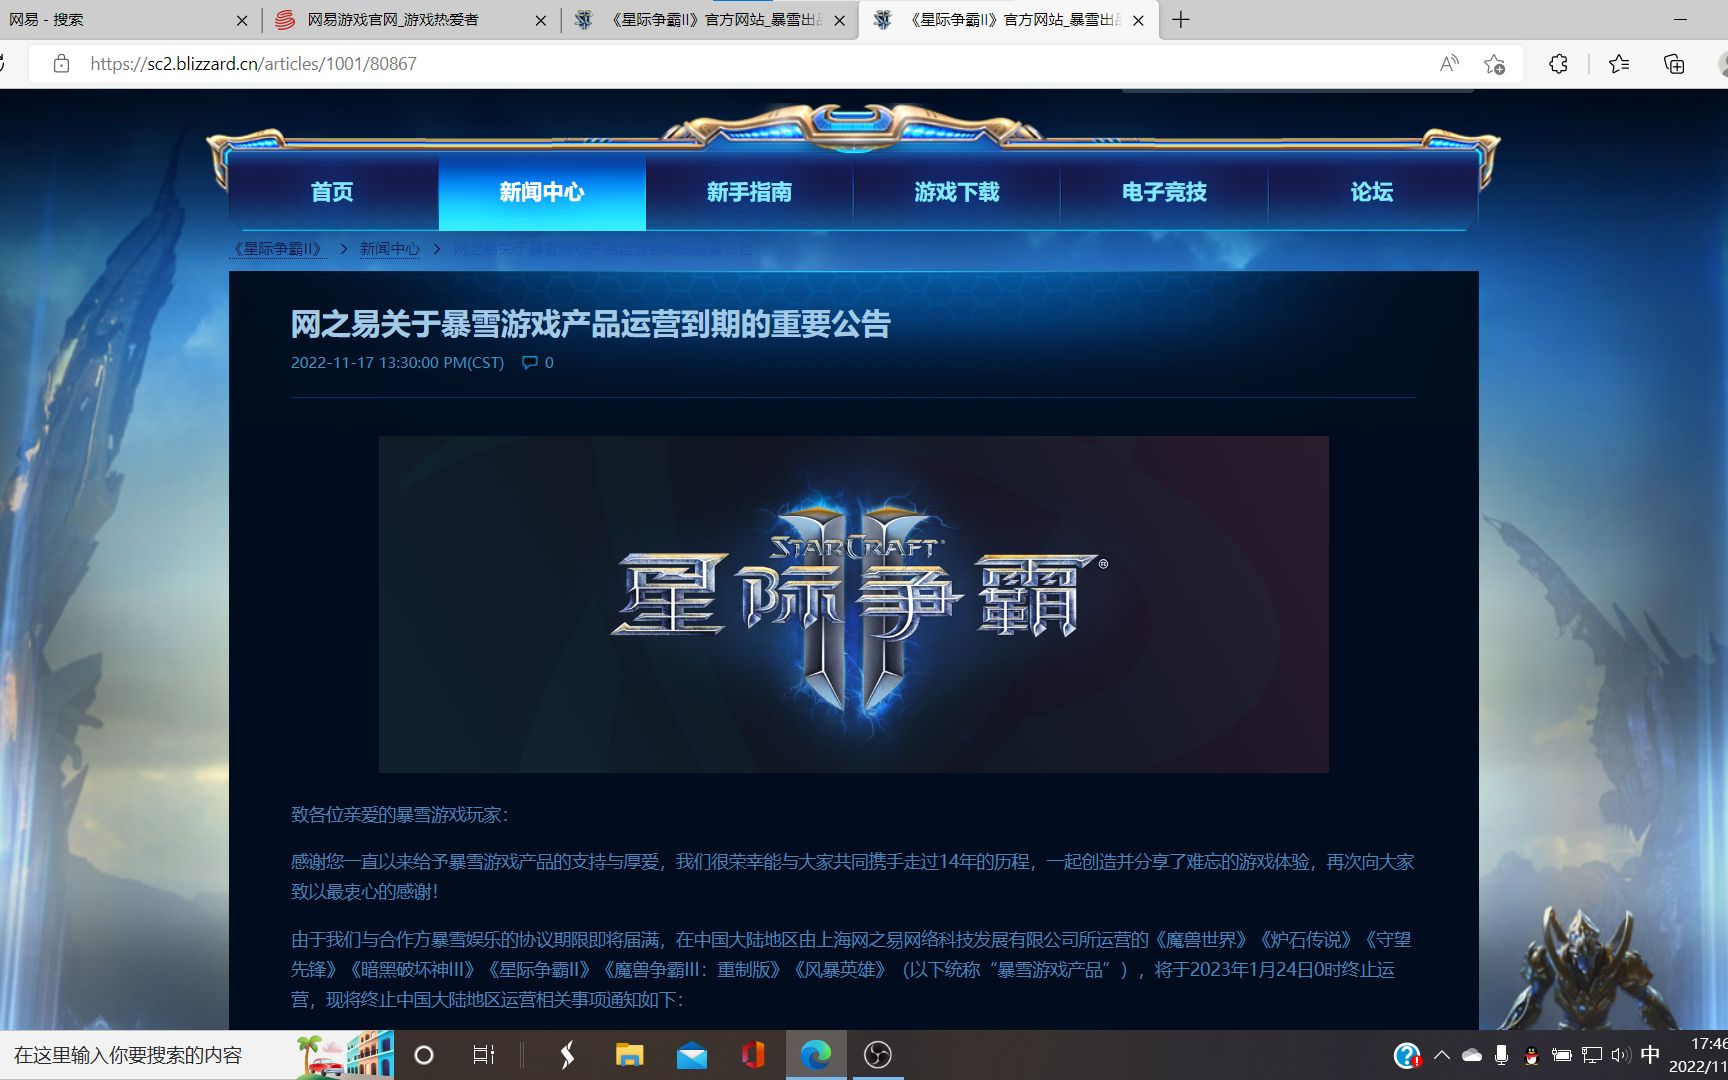 暴雪宣布《炉石传说》对决模式停止更新，预计 4 月移出游戏客户端_网络游戏新闻_17173.com中国游戏门户站